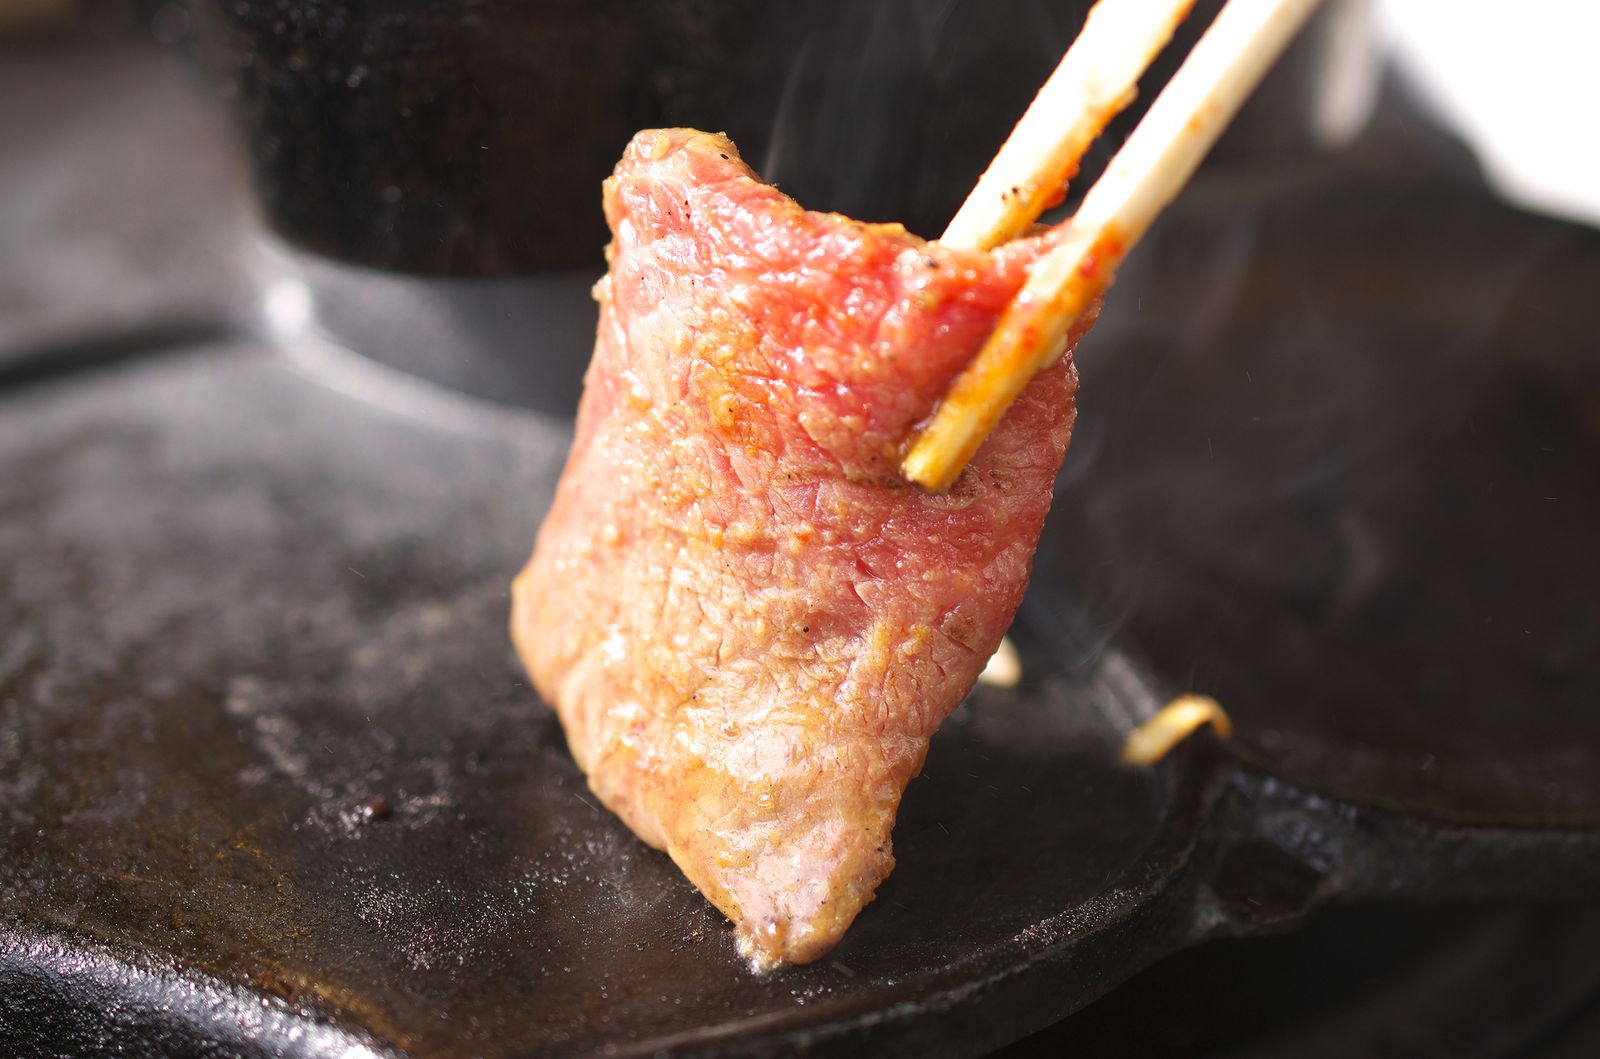 デートや接待にもおすすめ 絶対外さない 渋谷界隈 の人気焼肉店10選 Retrip リトリップ